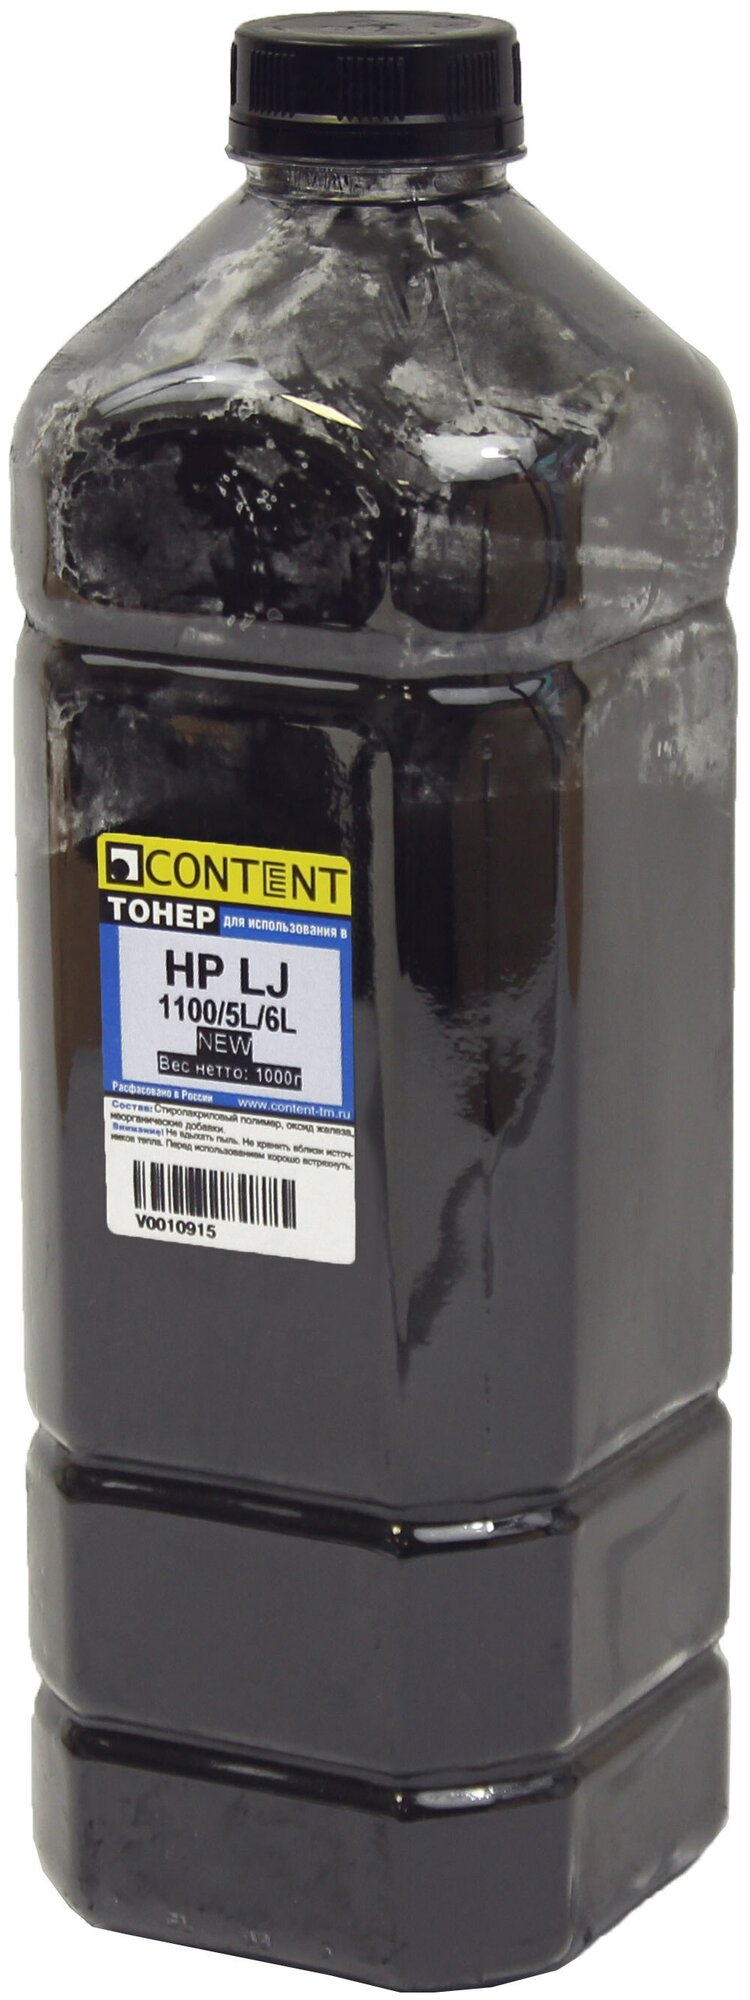 Тонер HP LJ 1100/5L/6L (Content) new, 1кг, канистра